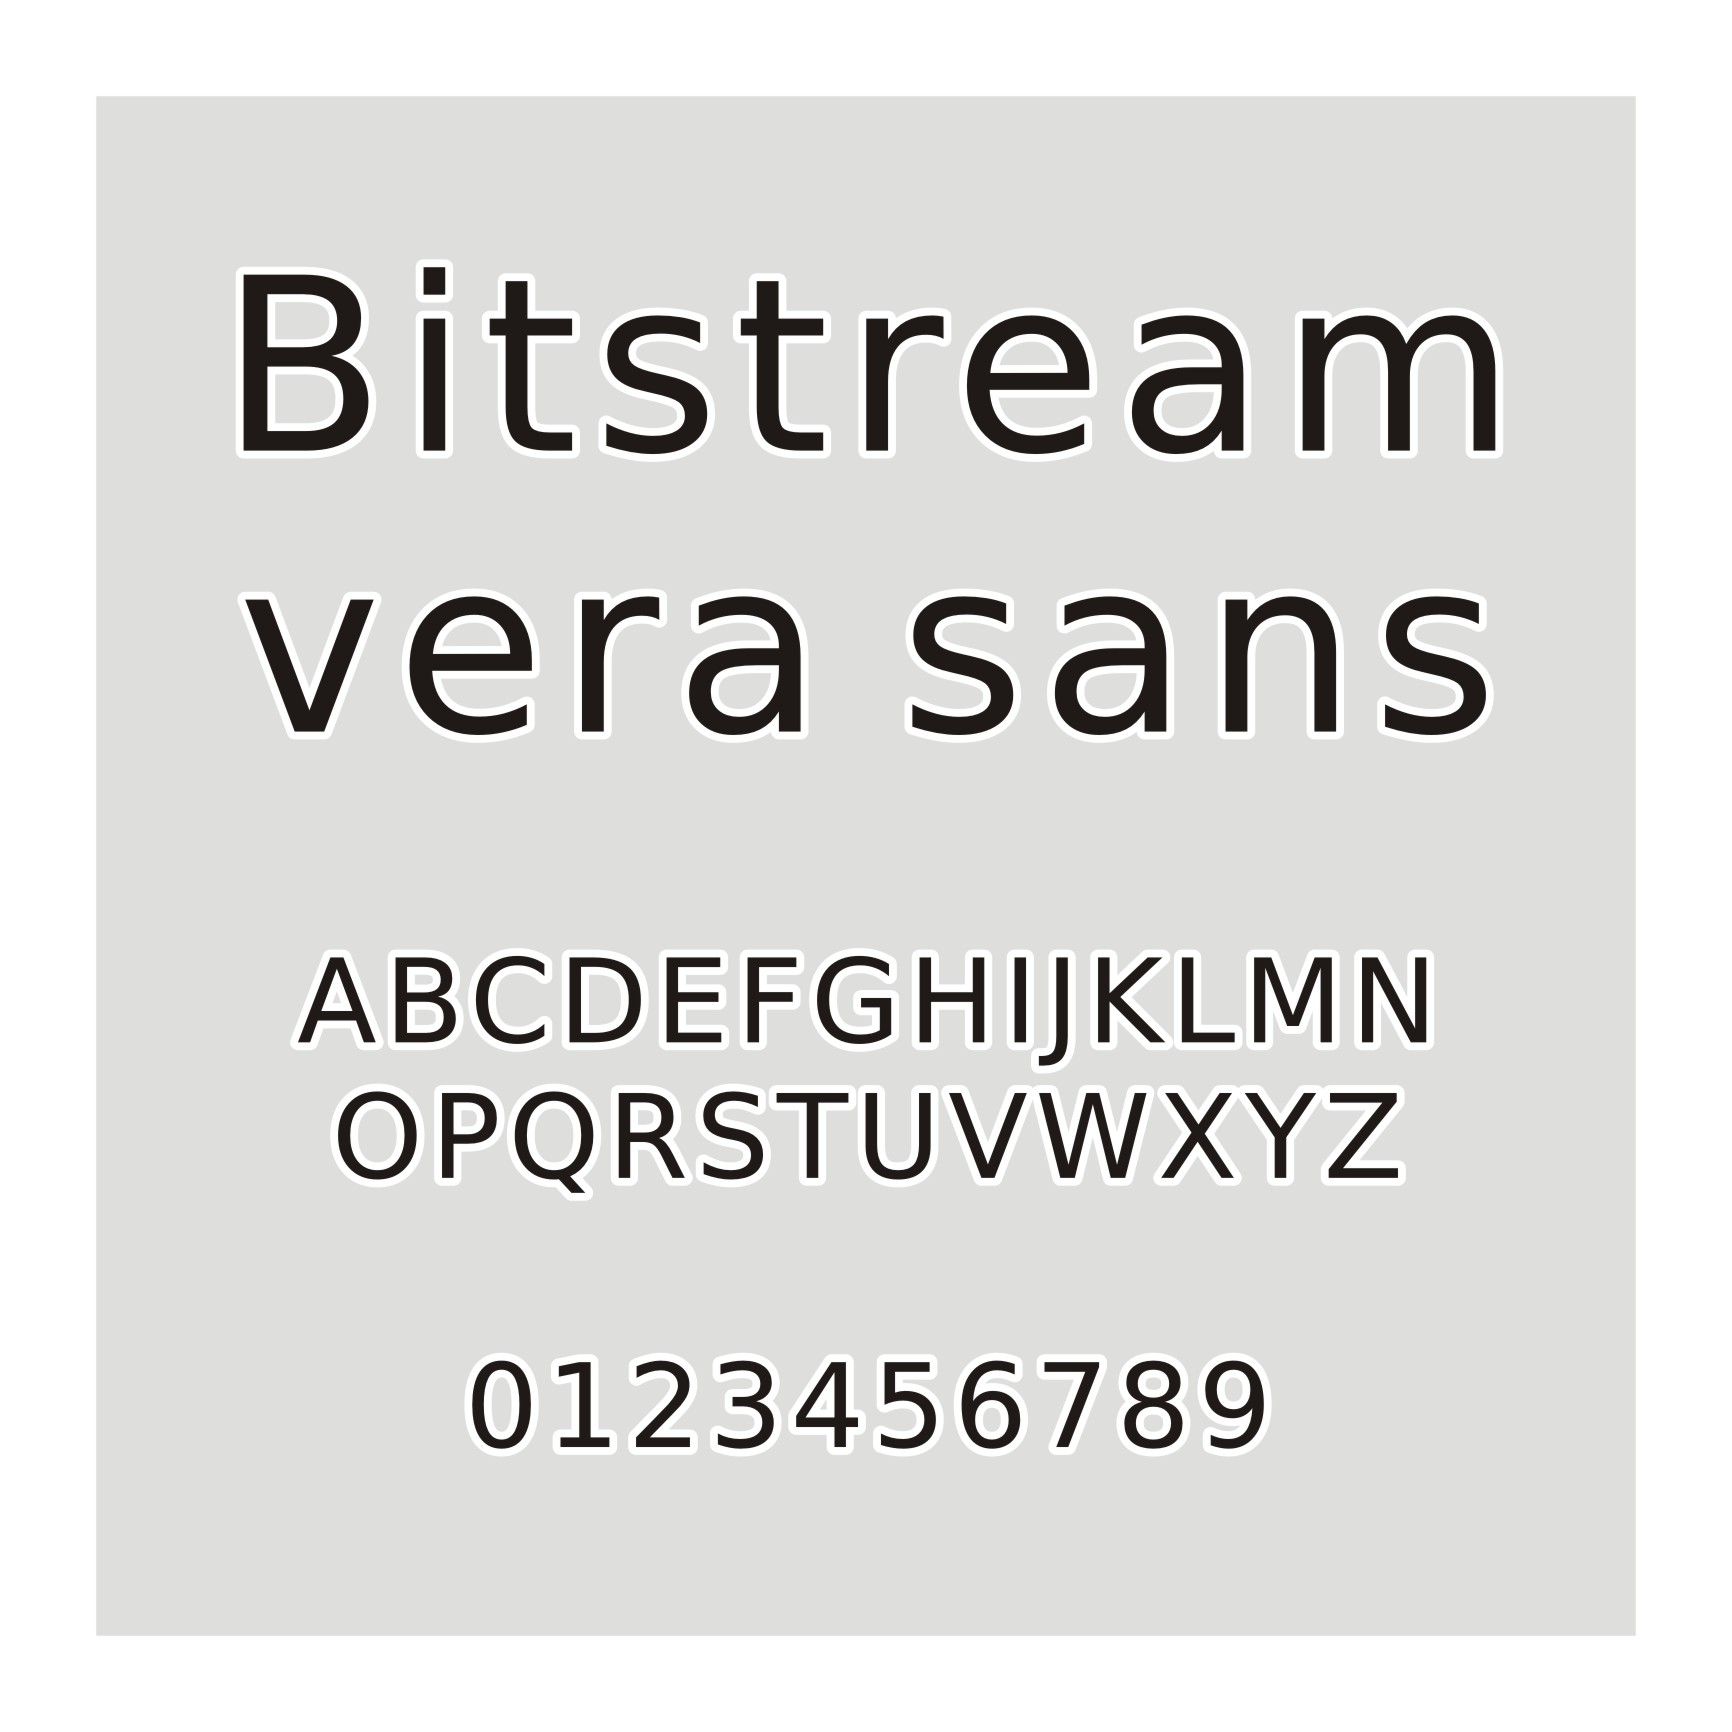 Bitstream vera sans